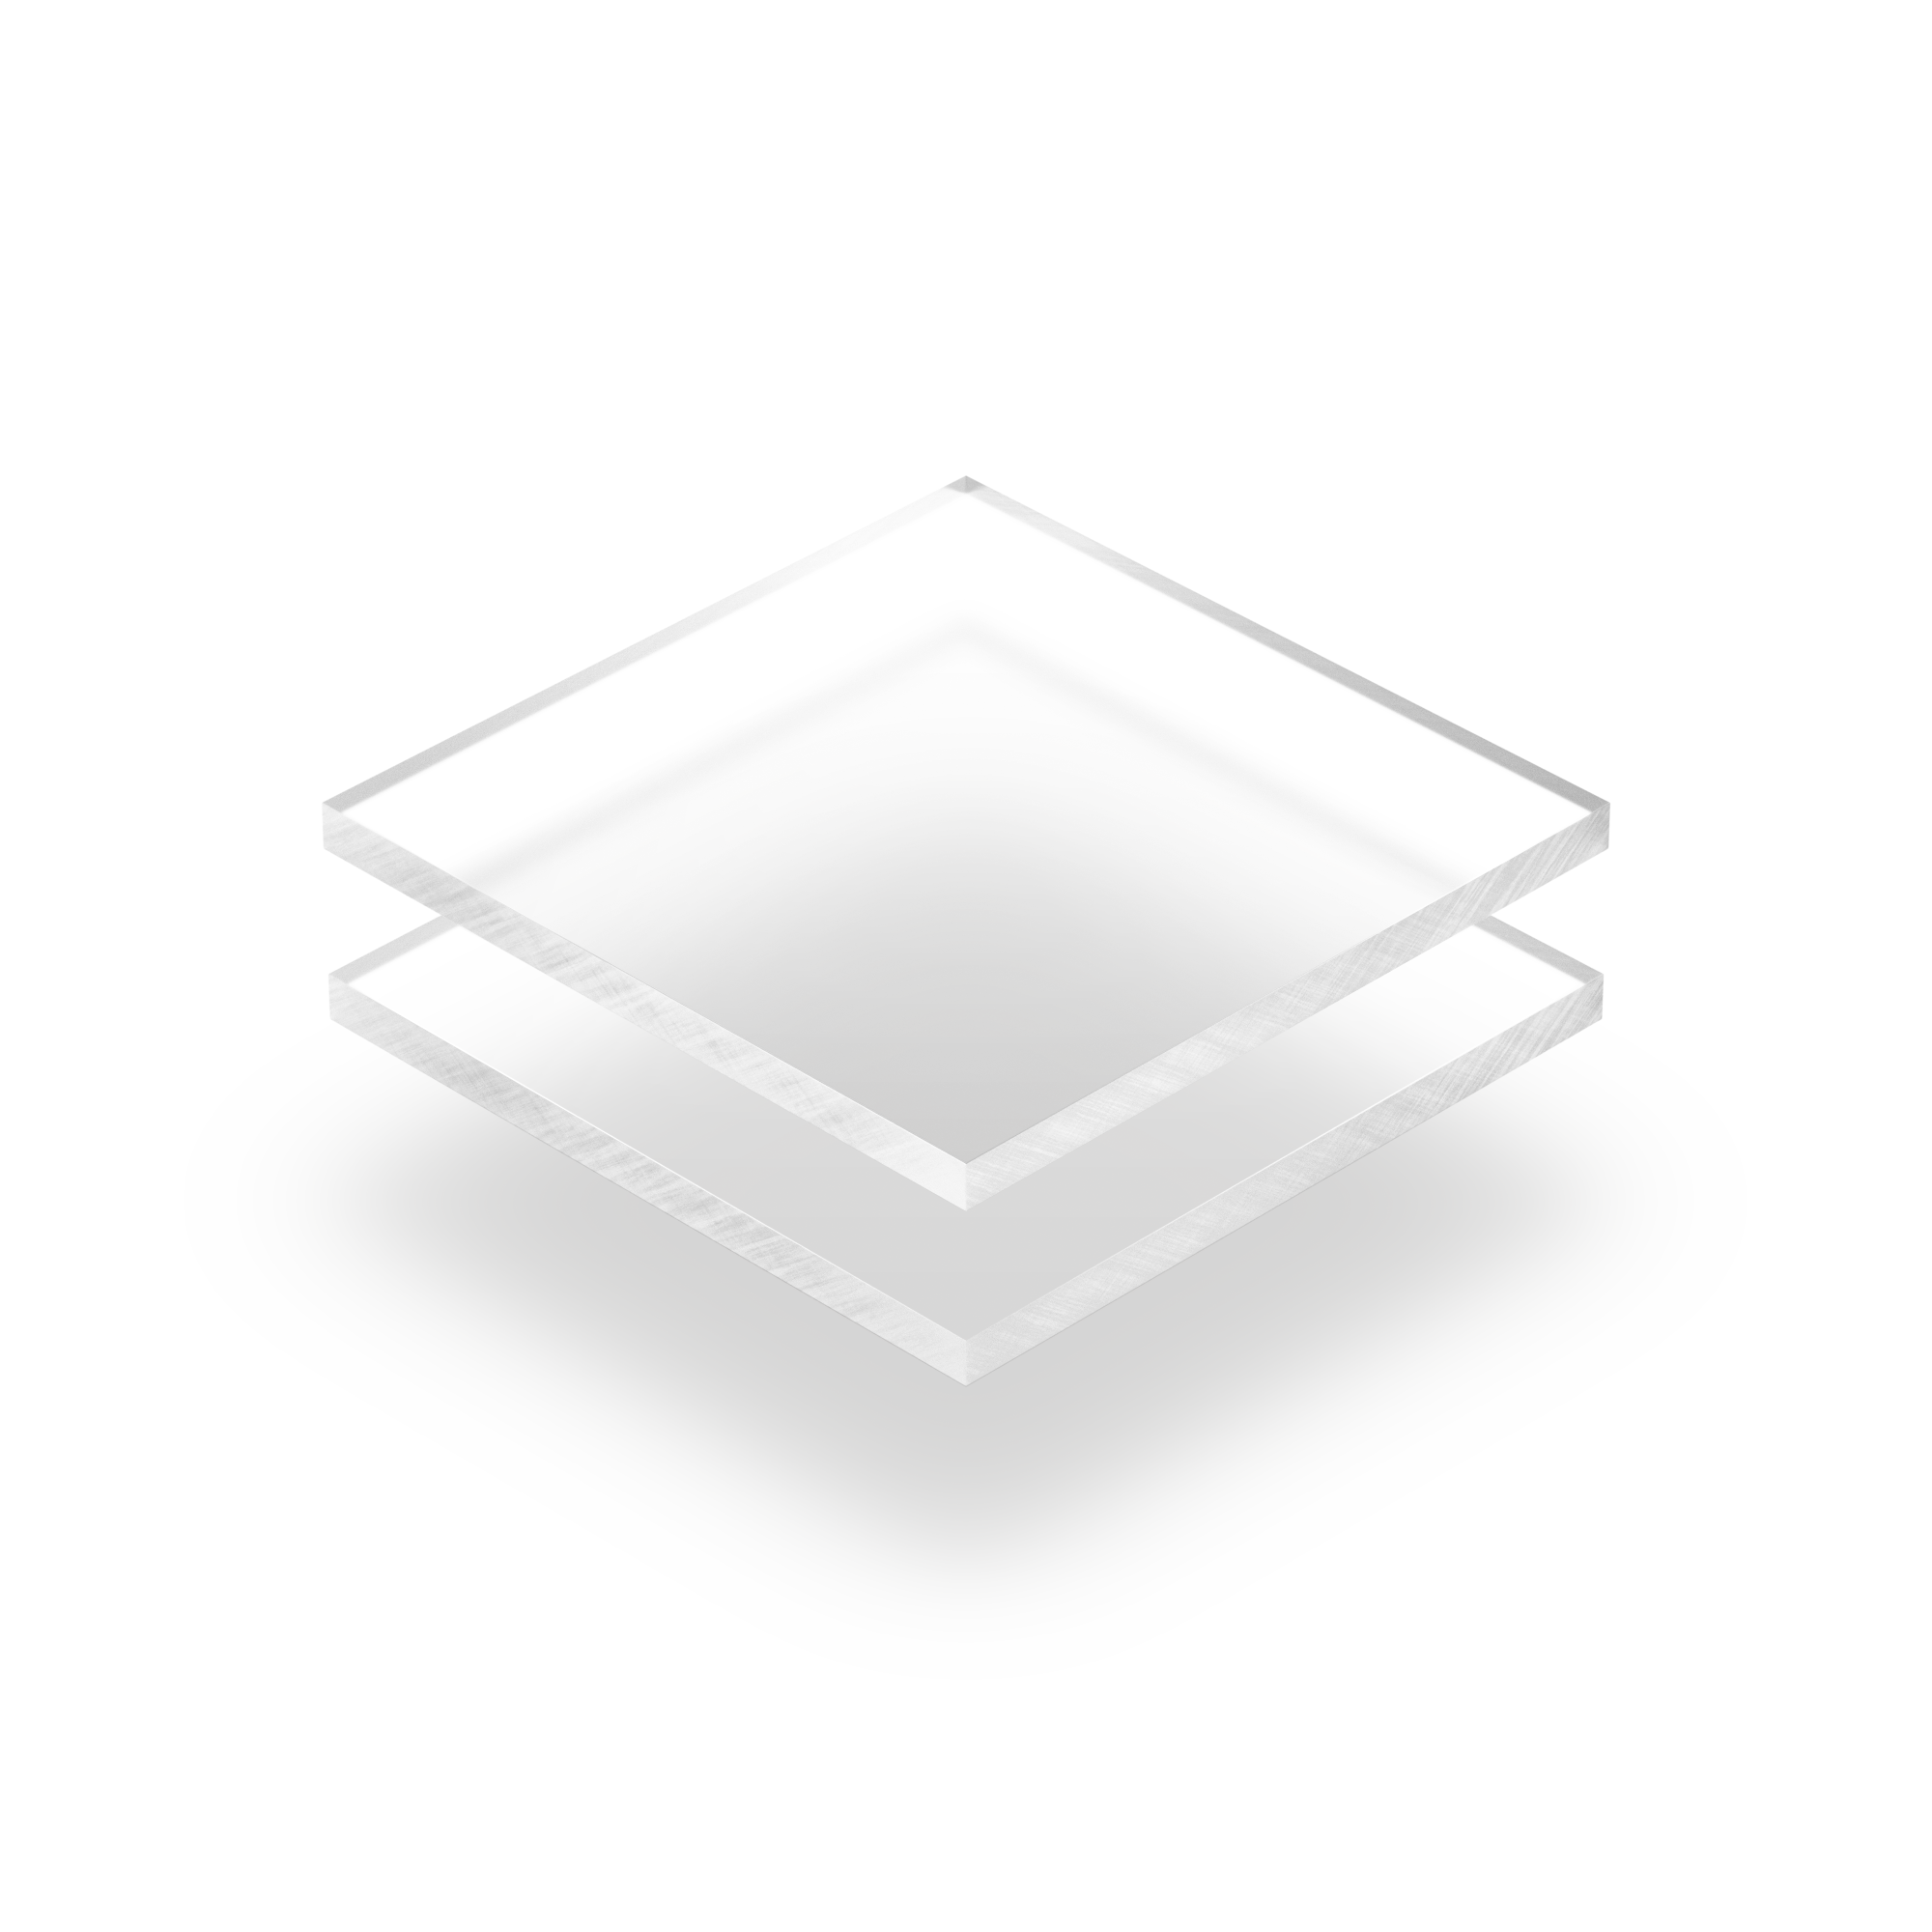 Plexiglass givré transparent 5mm